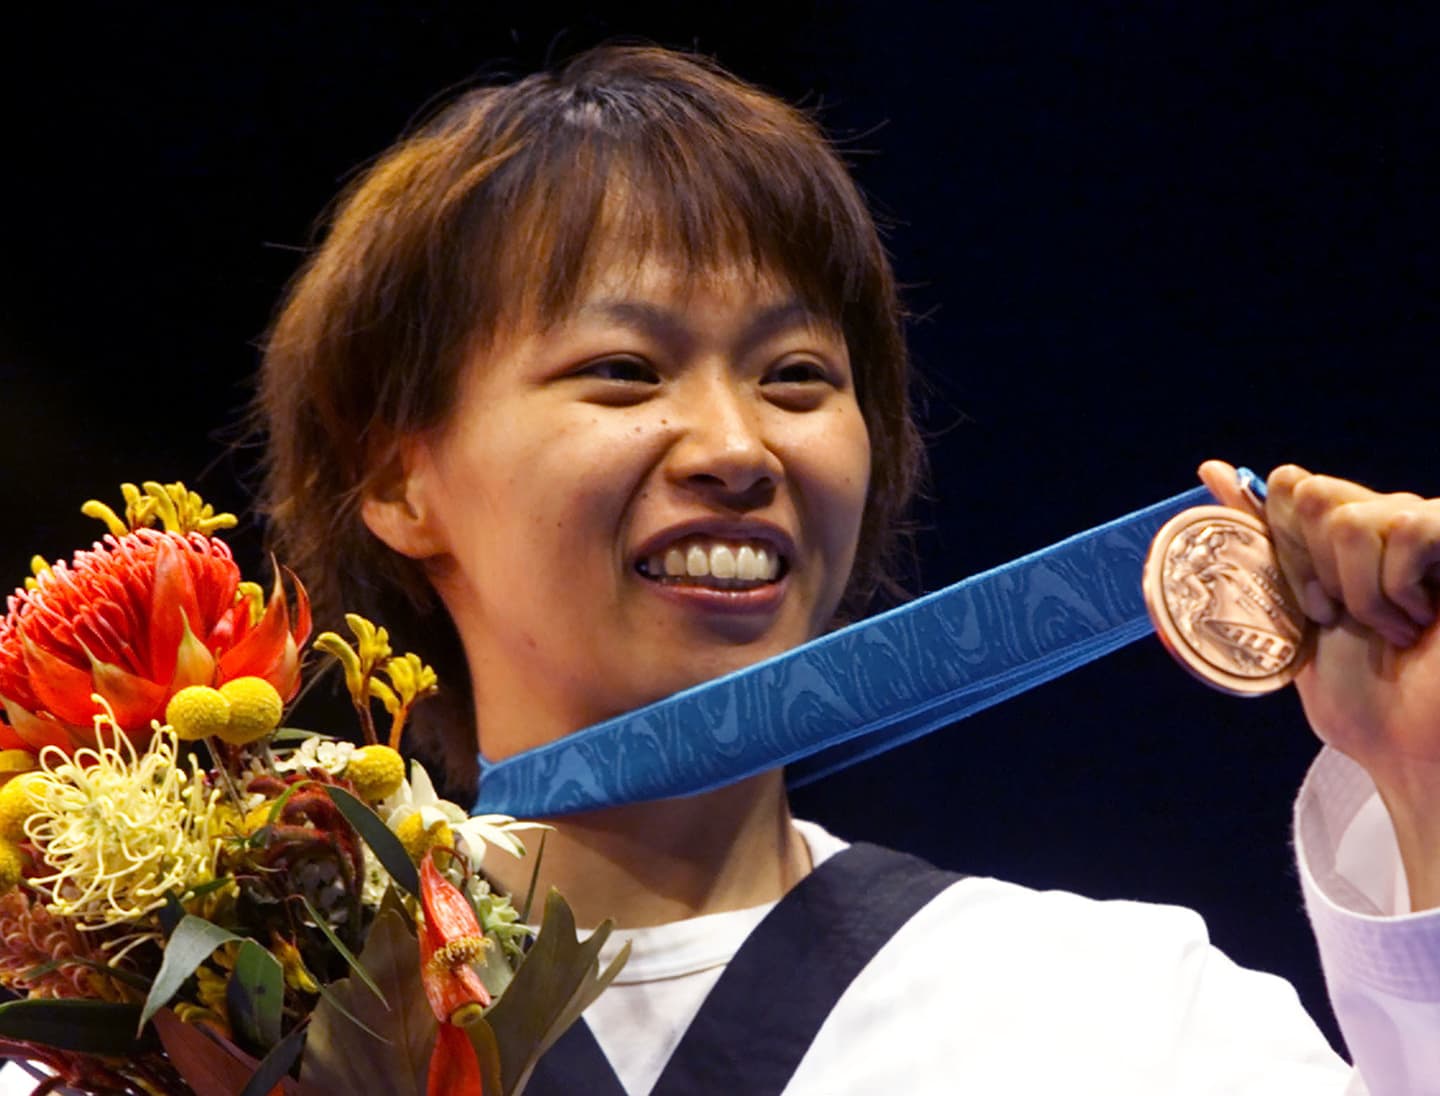 シドニー2020大会テコンドー女子-67kg級表彰式